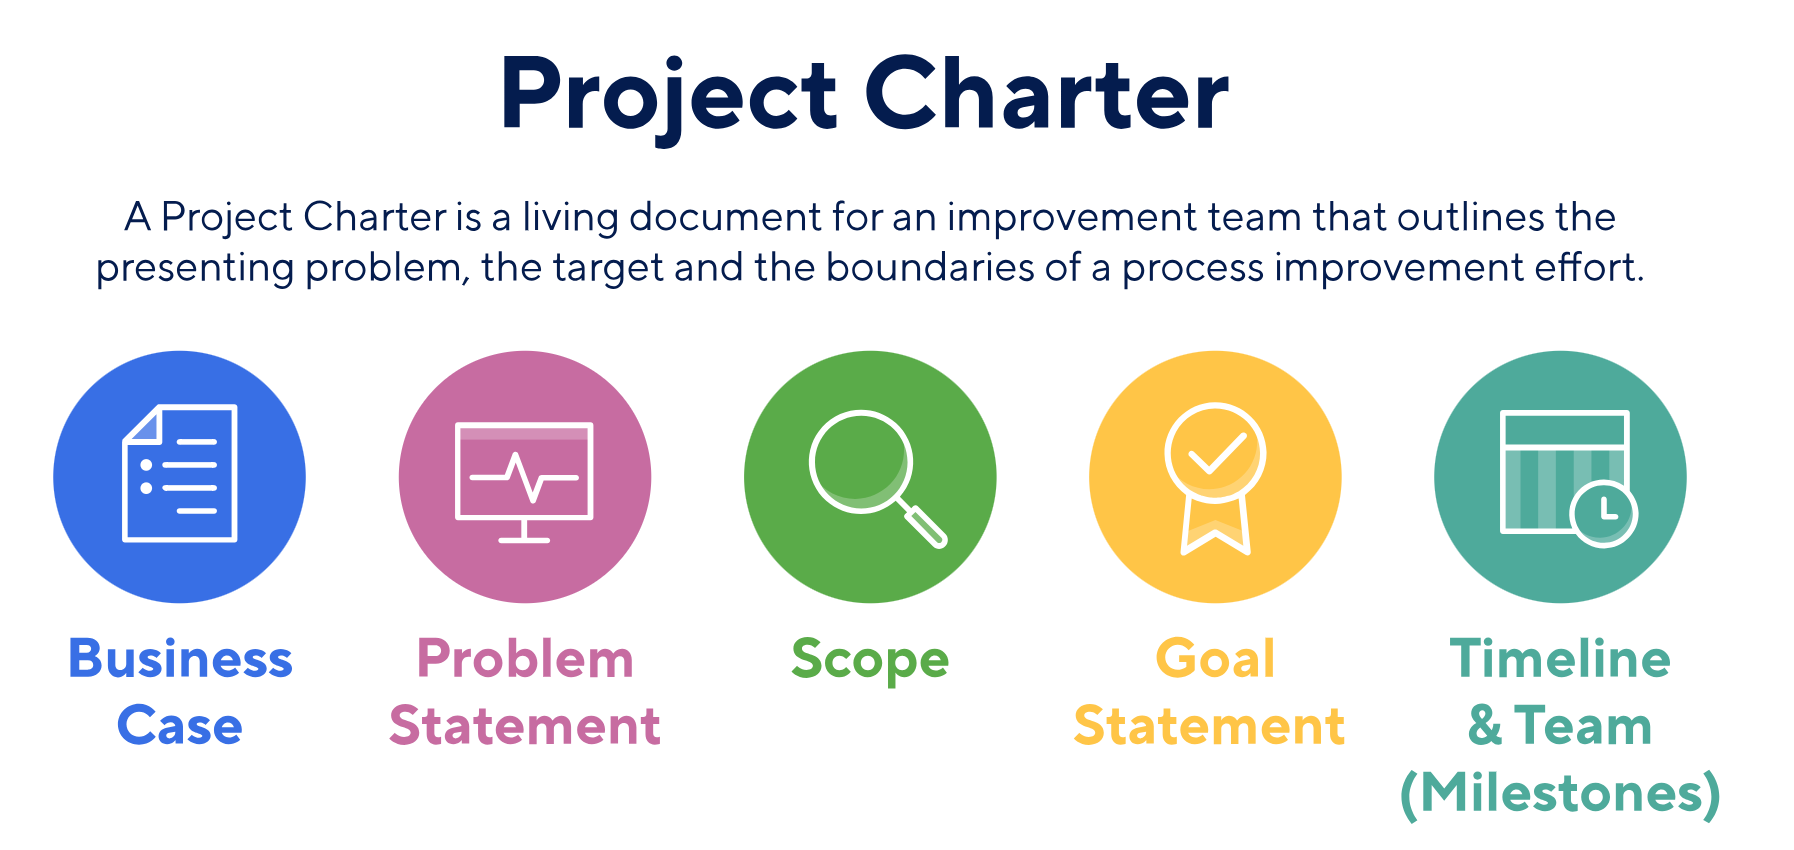 منشور پروژه (Project Charter) و فرآیند تدوین آن